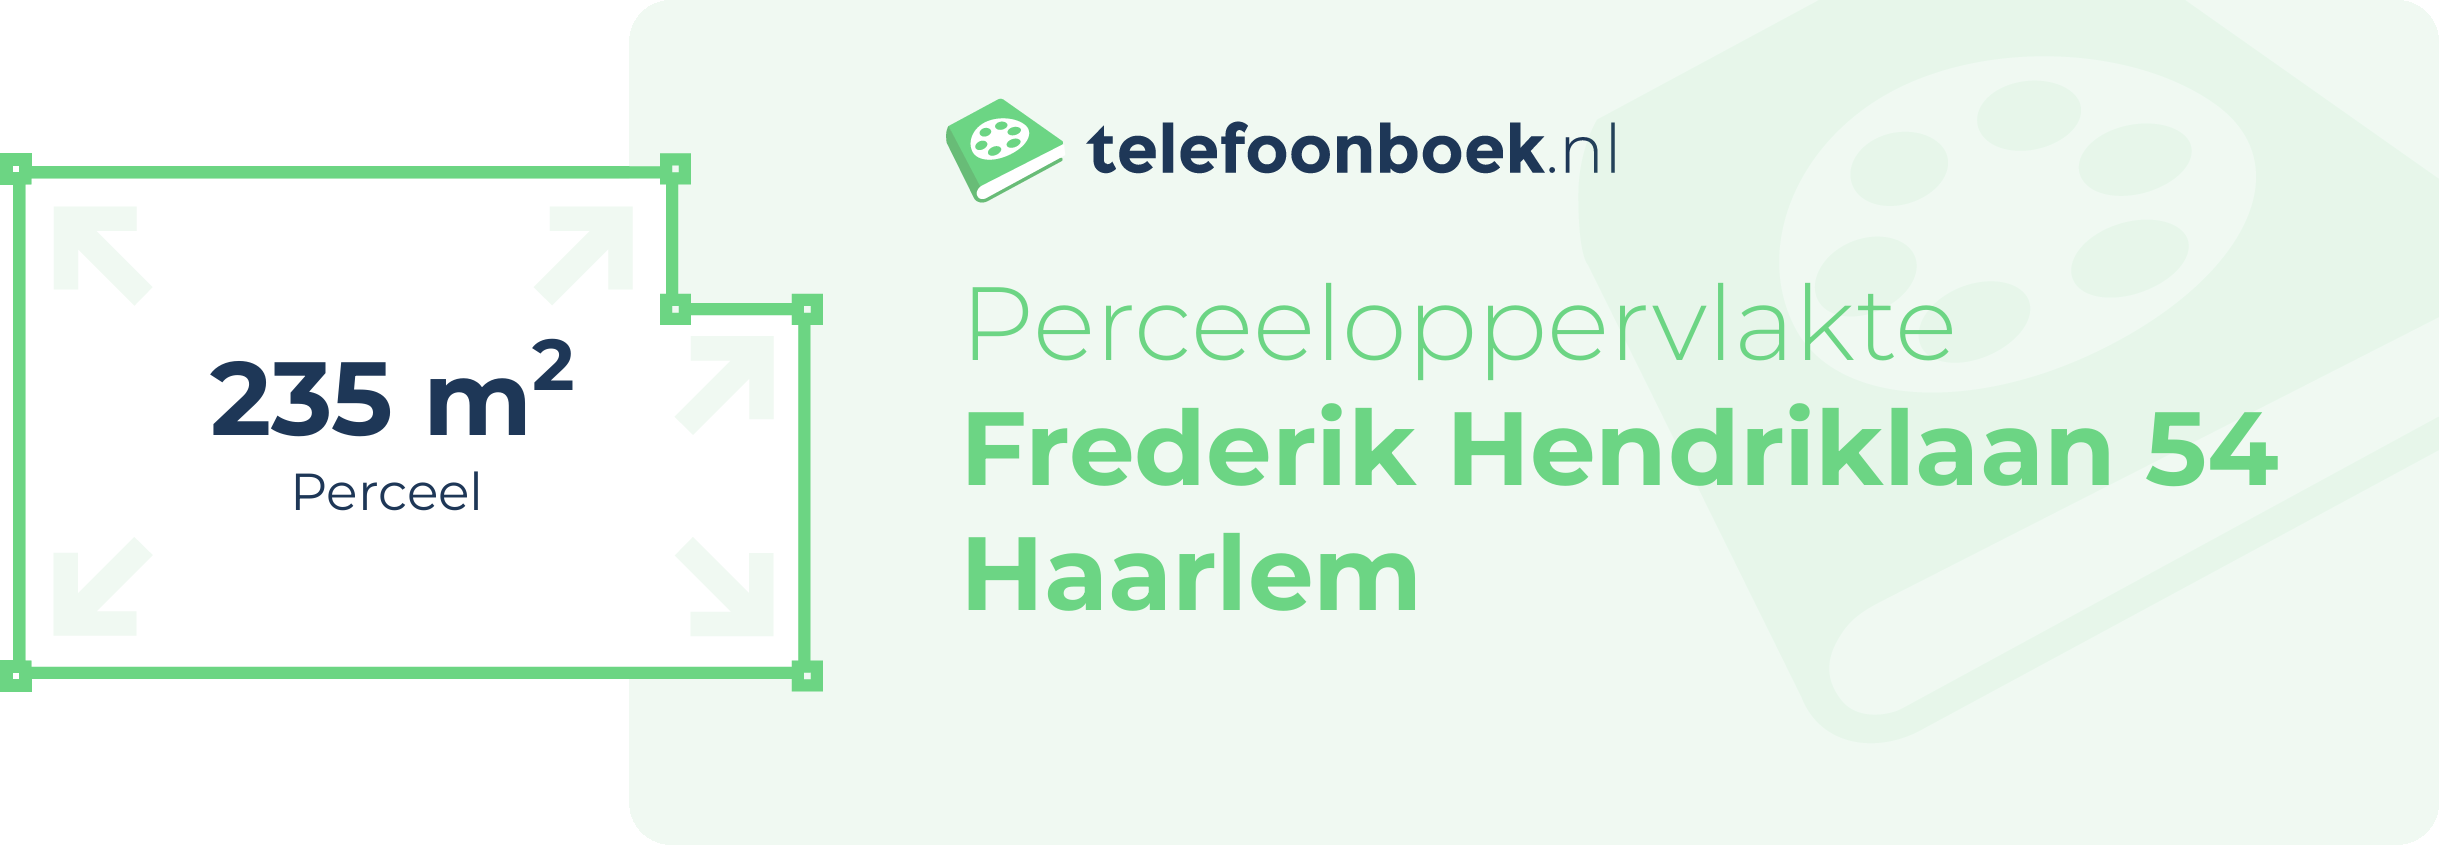 Perceeloppervlakte Frederik Hendriklaan 54 Haarlem